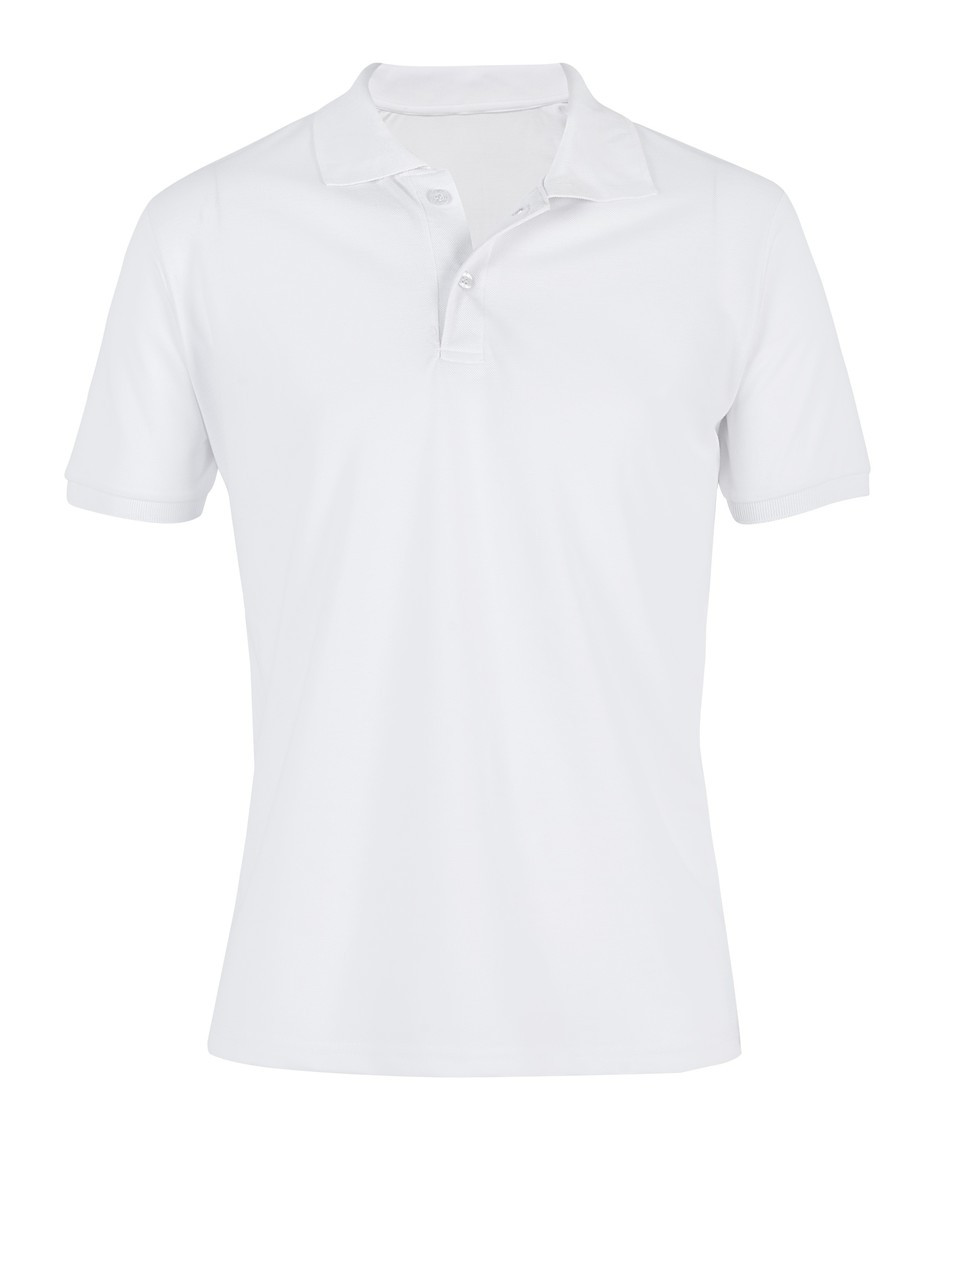 Everyday Golf Shirt | Branding Golf Shirts | Azulwear Cape Town, South ...